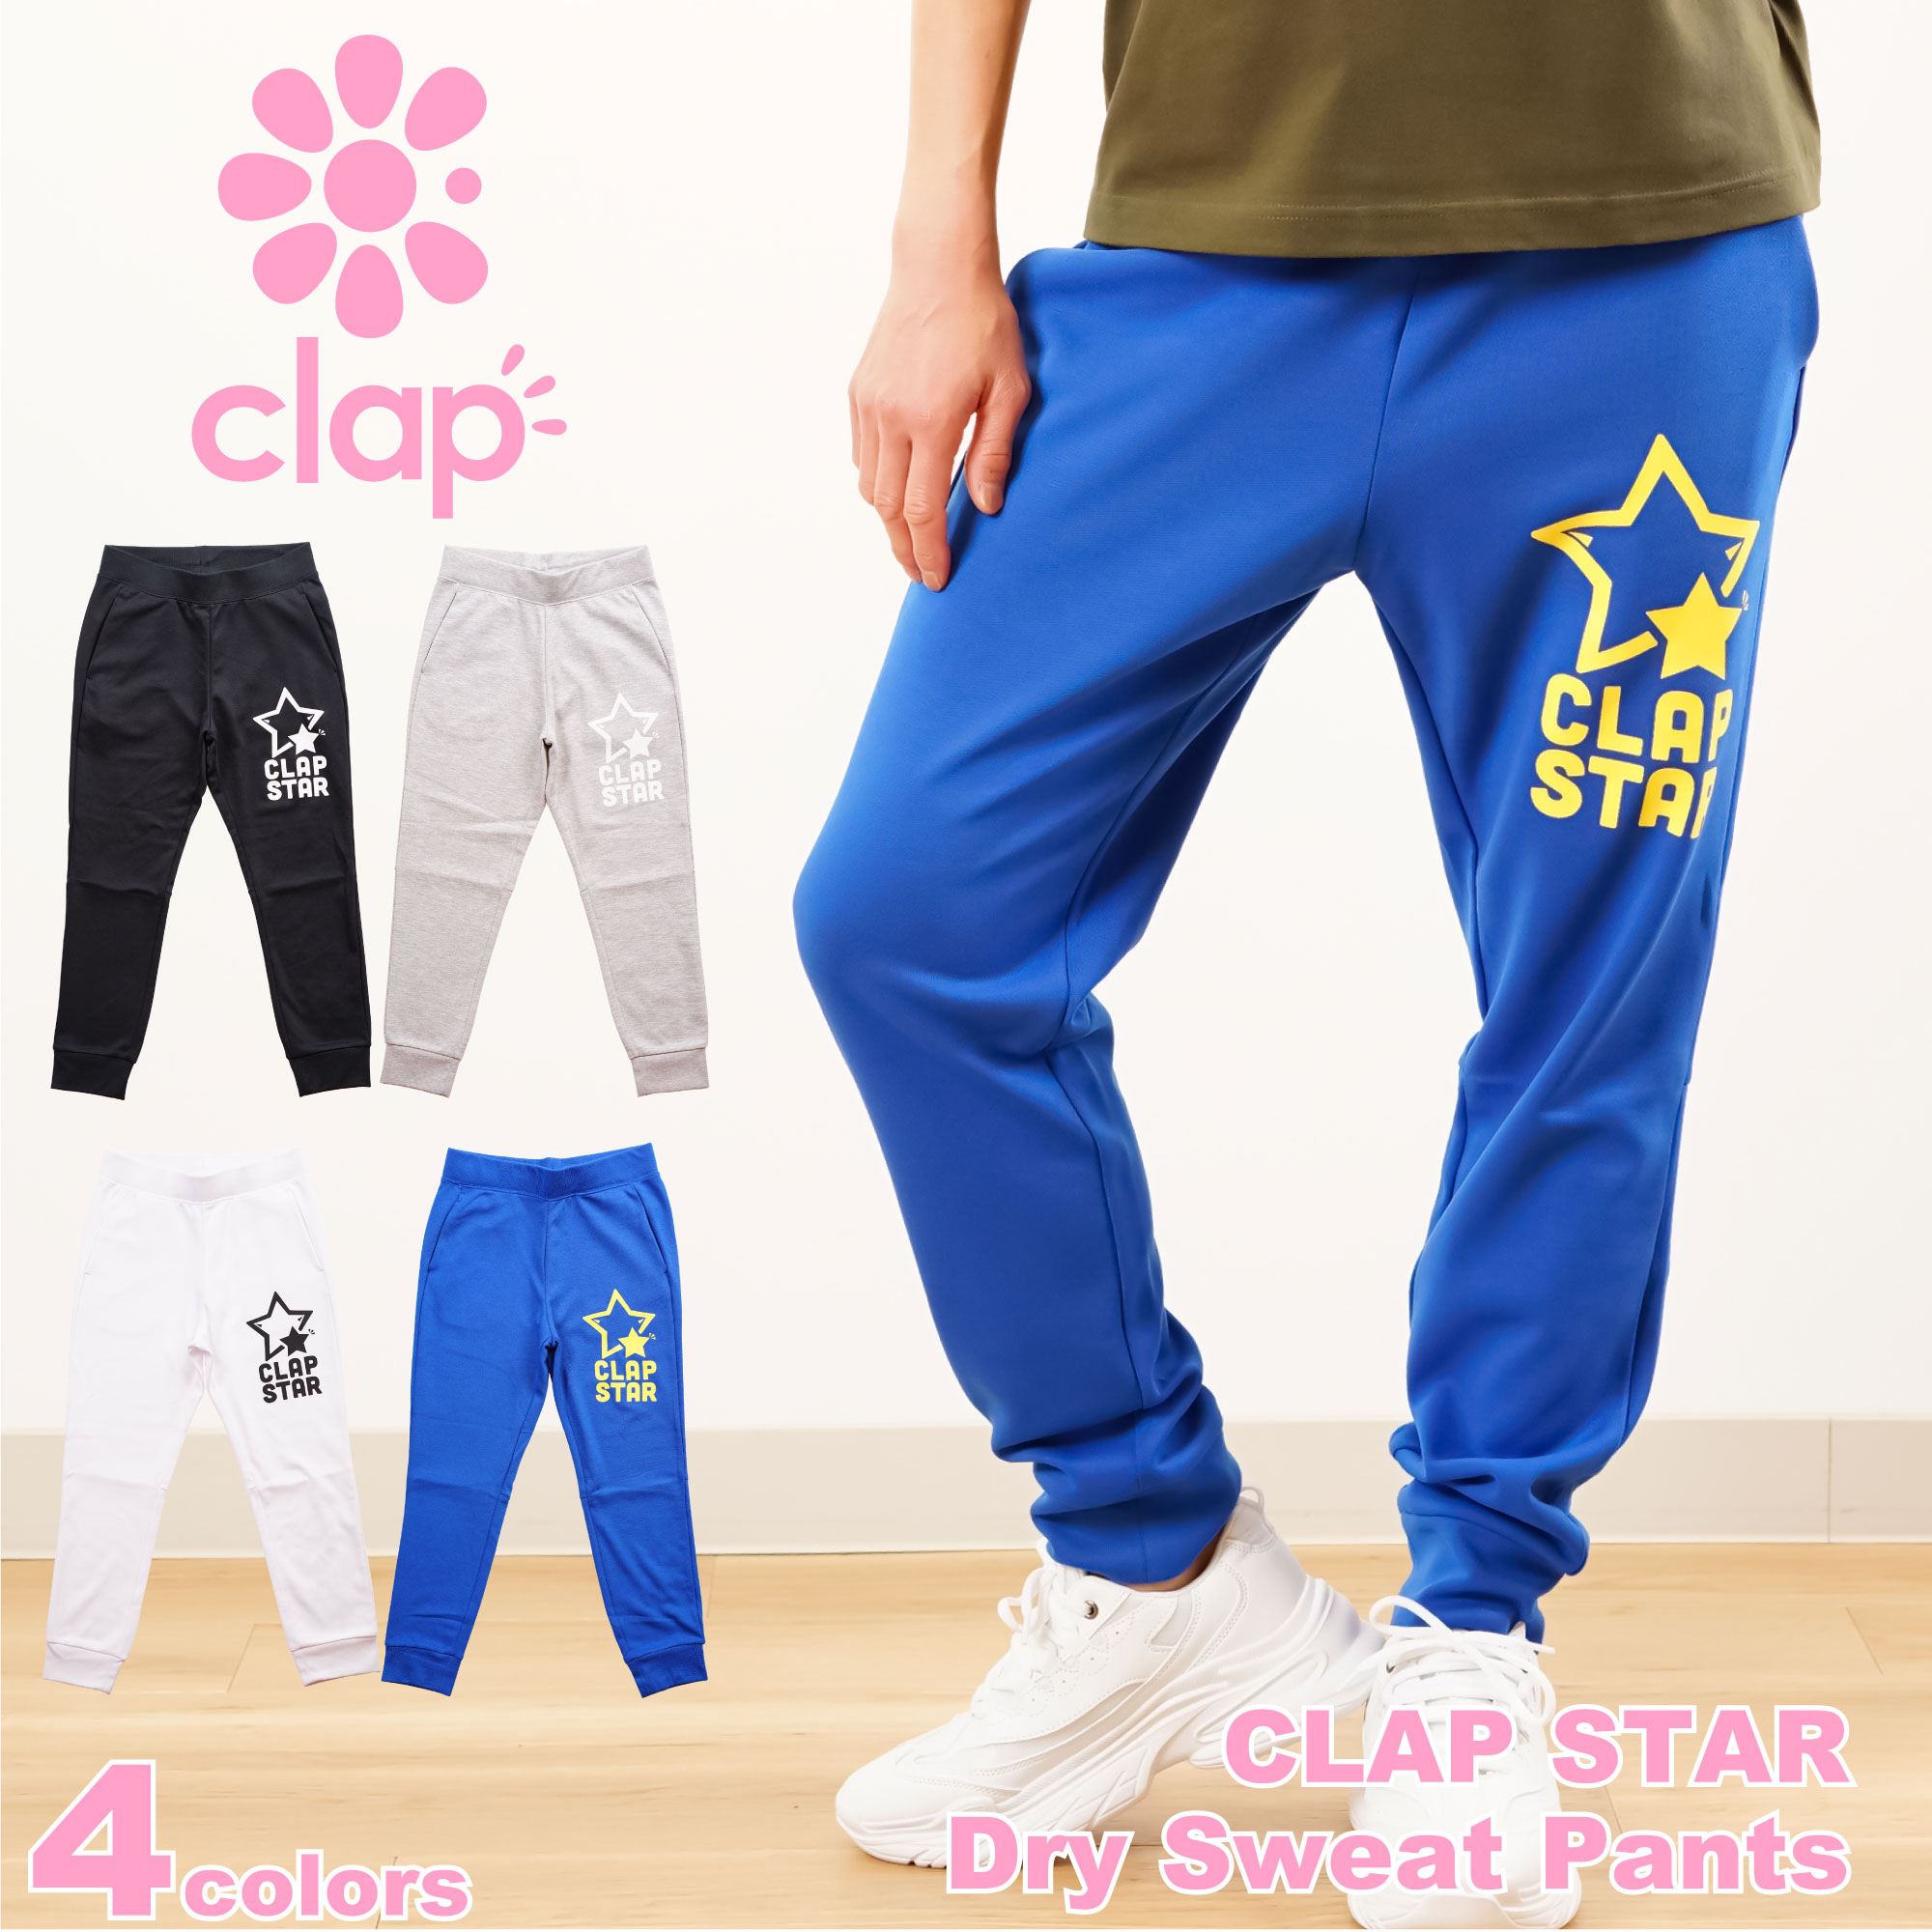 【送料無料】【clap4月新作】クラップ【4色】CLAP STAR Dry Sweat Pants フィットネス ウェア スポーツ ウェア トレーニング ウェア レディース ダンス エアロ パンツ ロング ドライスウェット